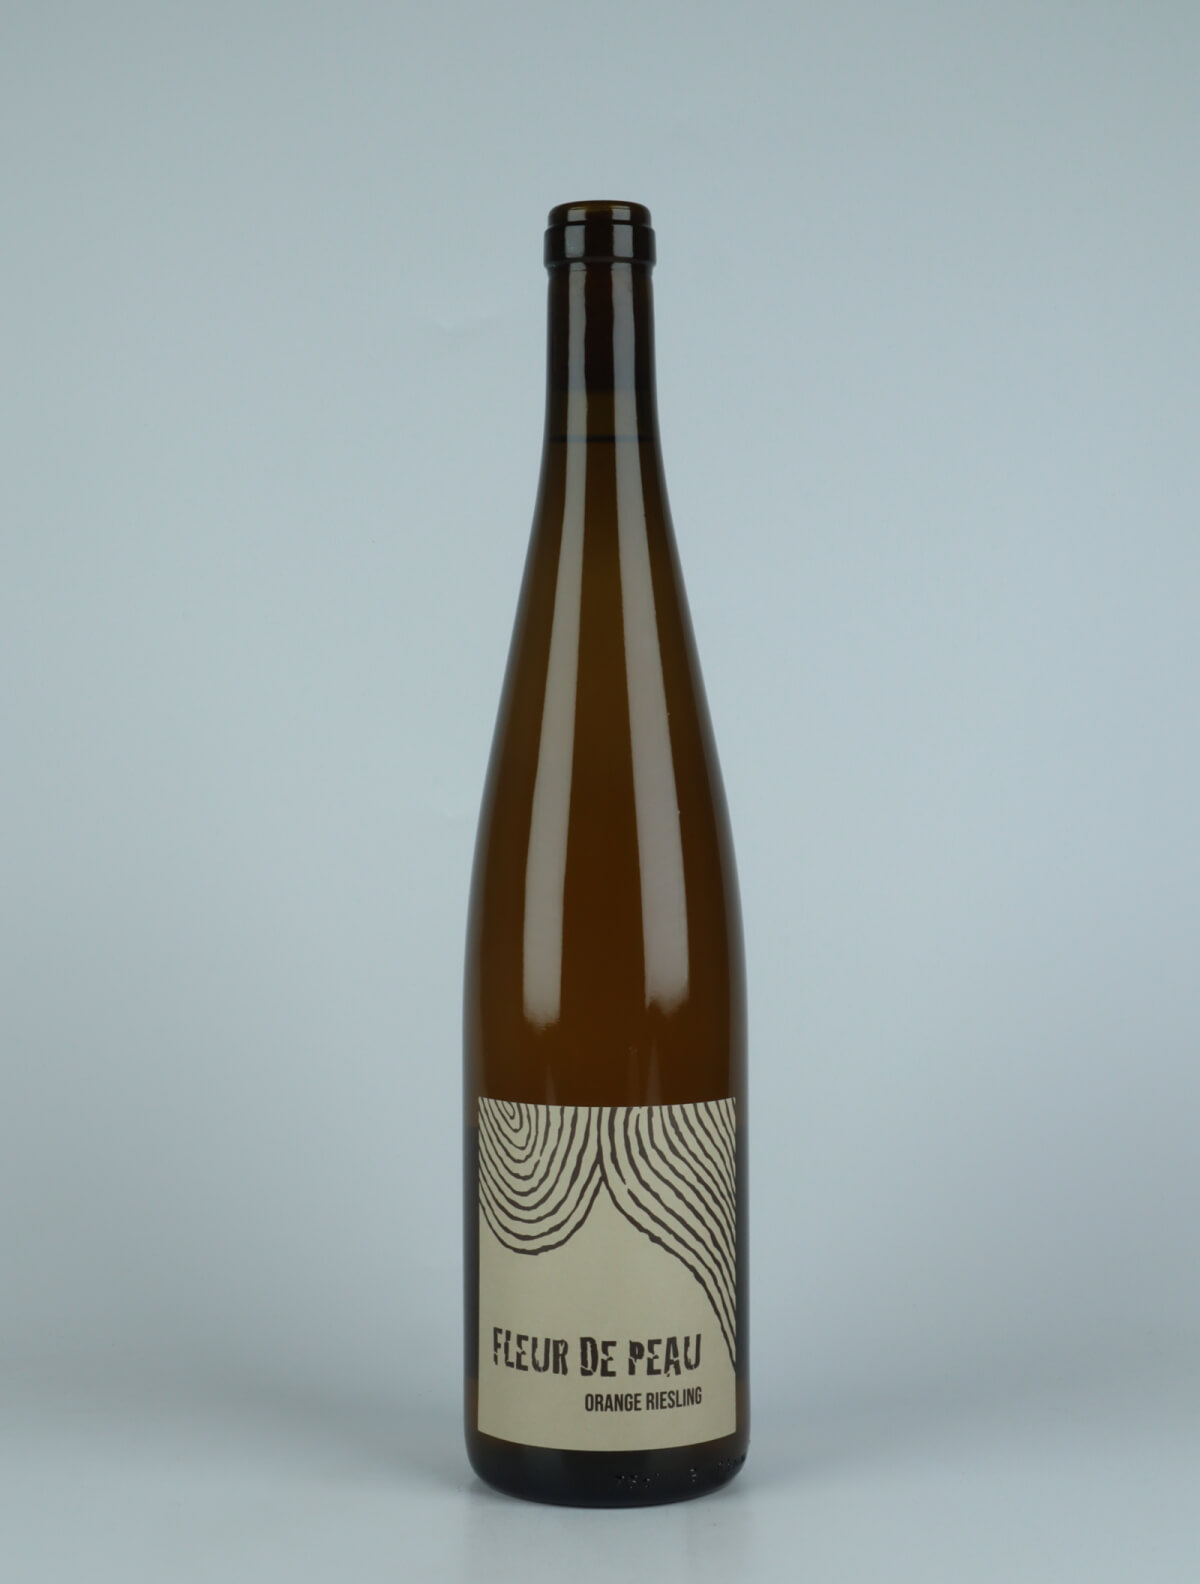 A bottle 2021 Fleur de Peau Orange wine from Ruhlmann Dirringer, Alsace in France